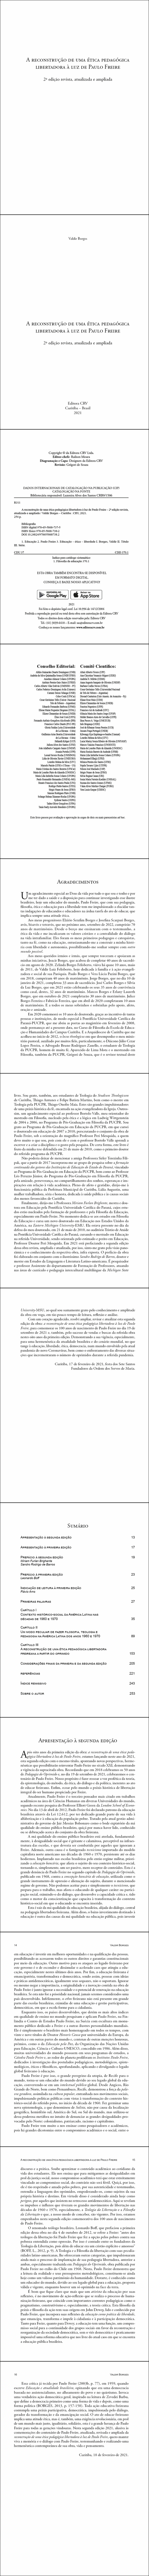 A reconstrução de uma ética pedagógica libertadora à luz de Paulo Freire <br><br>2ª edição revista, atualizada e ampliada